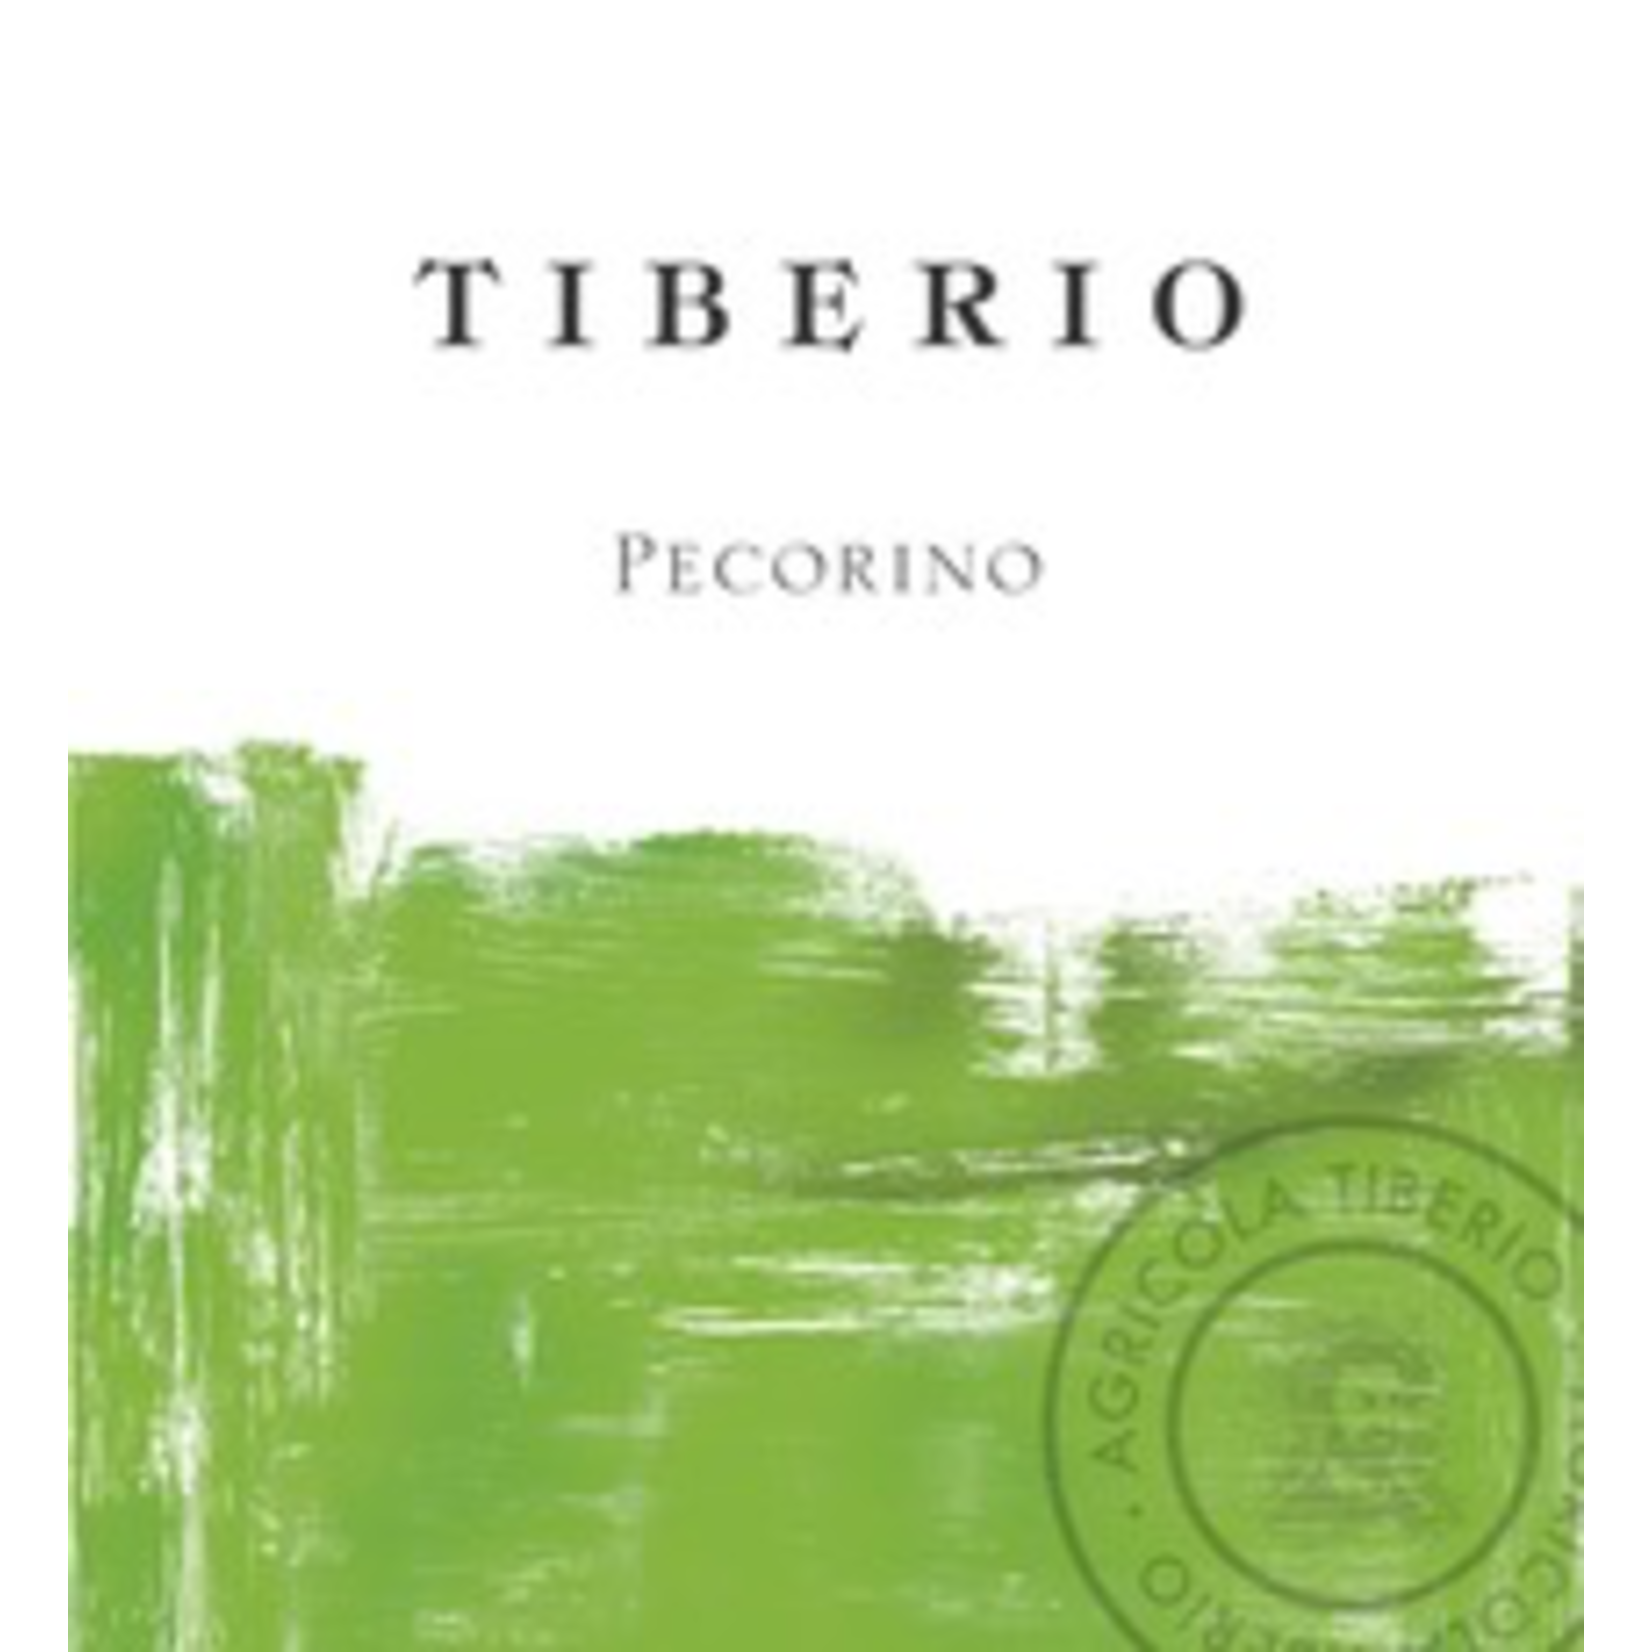 Wine Tiberio Pecorino Colline Pescaresi 2020